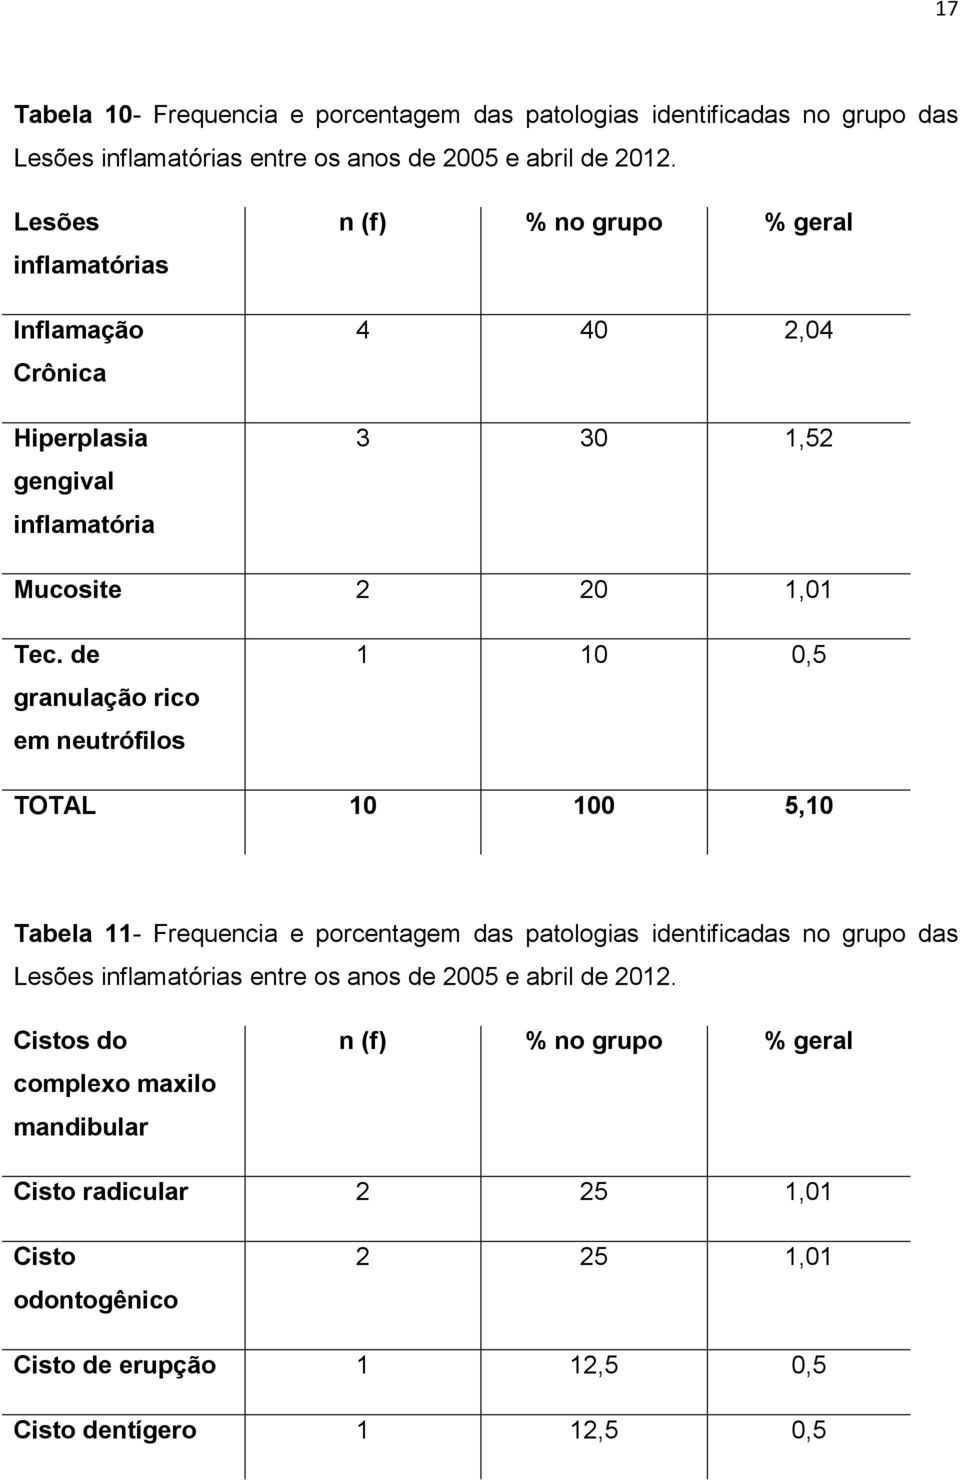 de granulação rico em neutrófilos 1 10 0,5 TOTAL 10 100 5,10 Tabela 11- Frequencia e porcentagem das patologias identificadas no grupo das Lesões inflamatórias